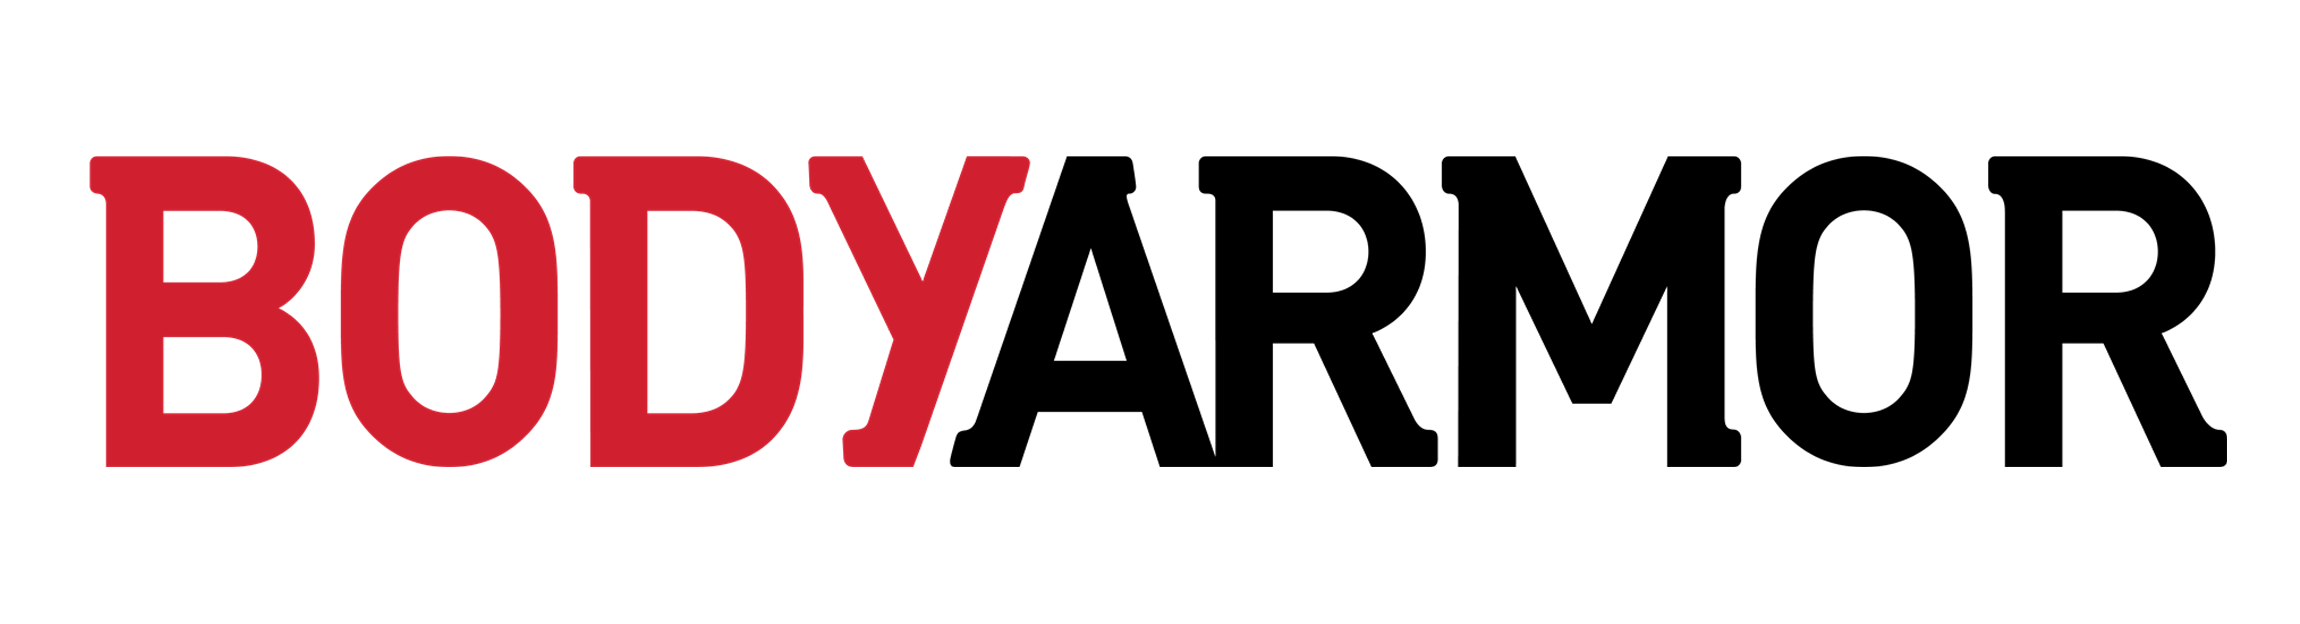 Body Armor Logo